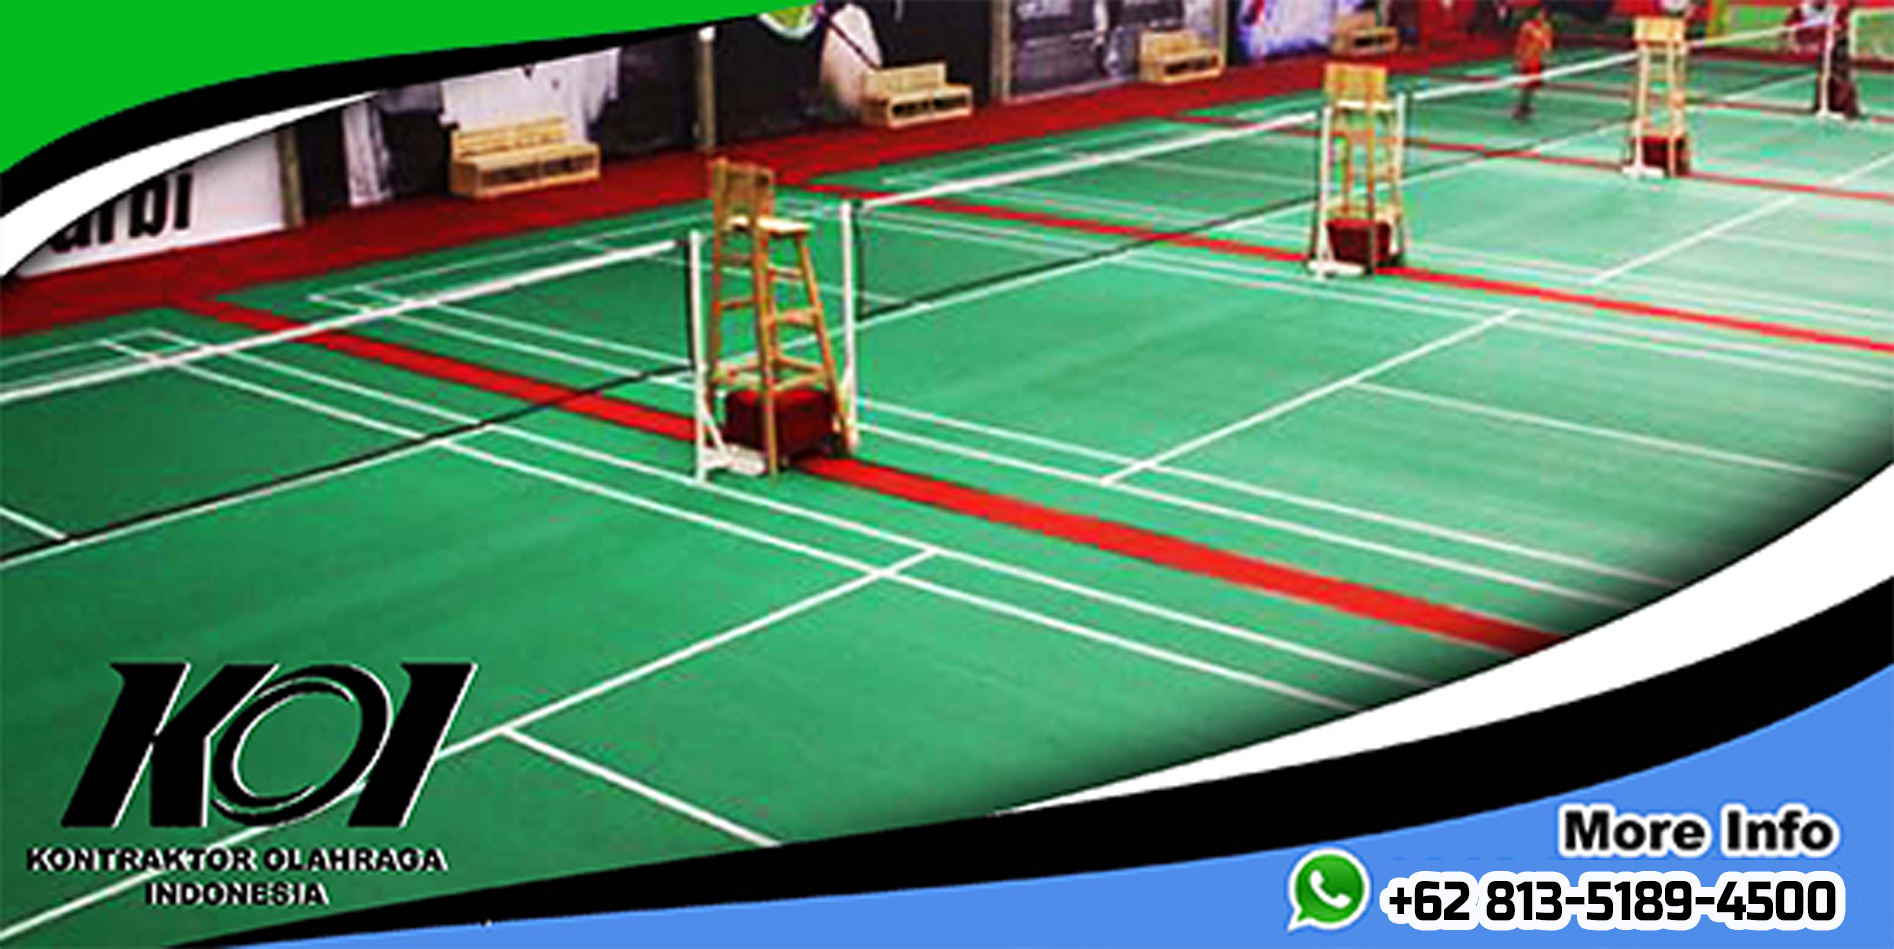 Distributor Harga Pembuatan Lapangan Badminton Murah Bagus Berkualitas